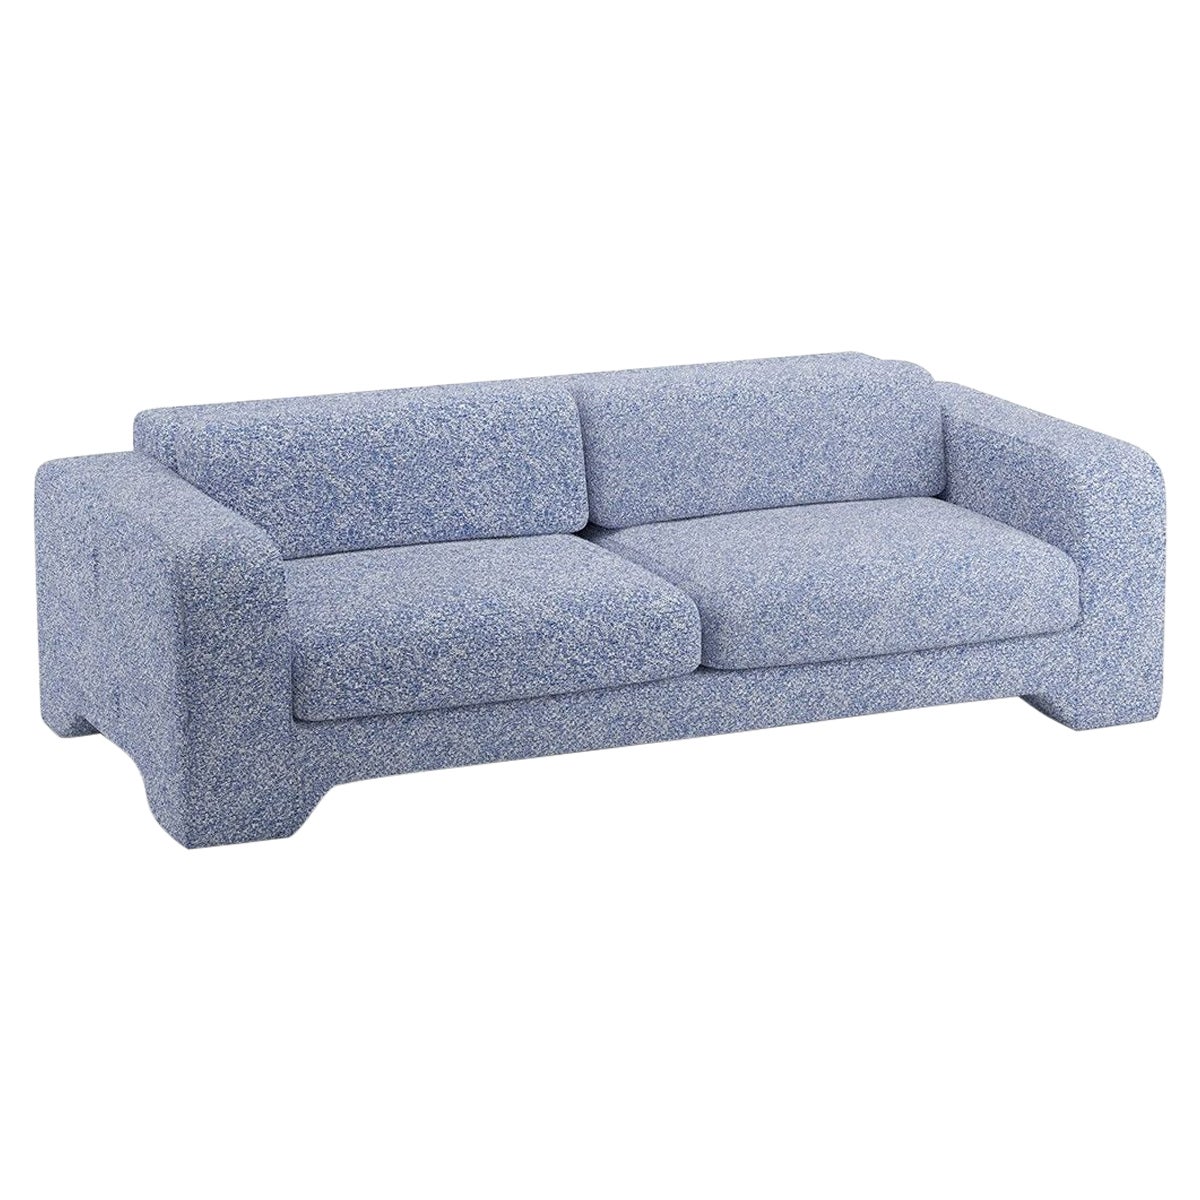 Popus Editions Giovanna 3 Seater Sofa in Ocean Zanzi Linen Fabric For Sale